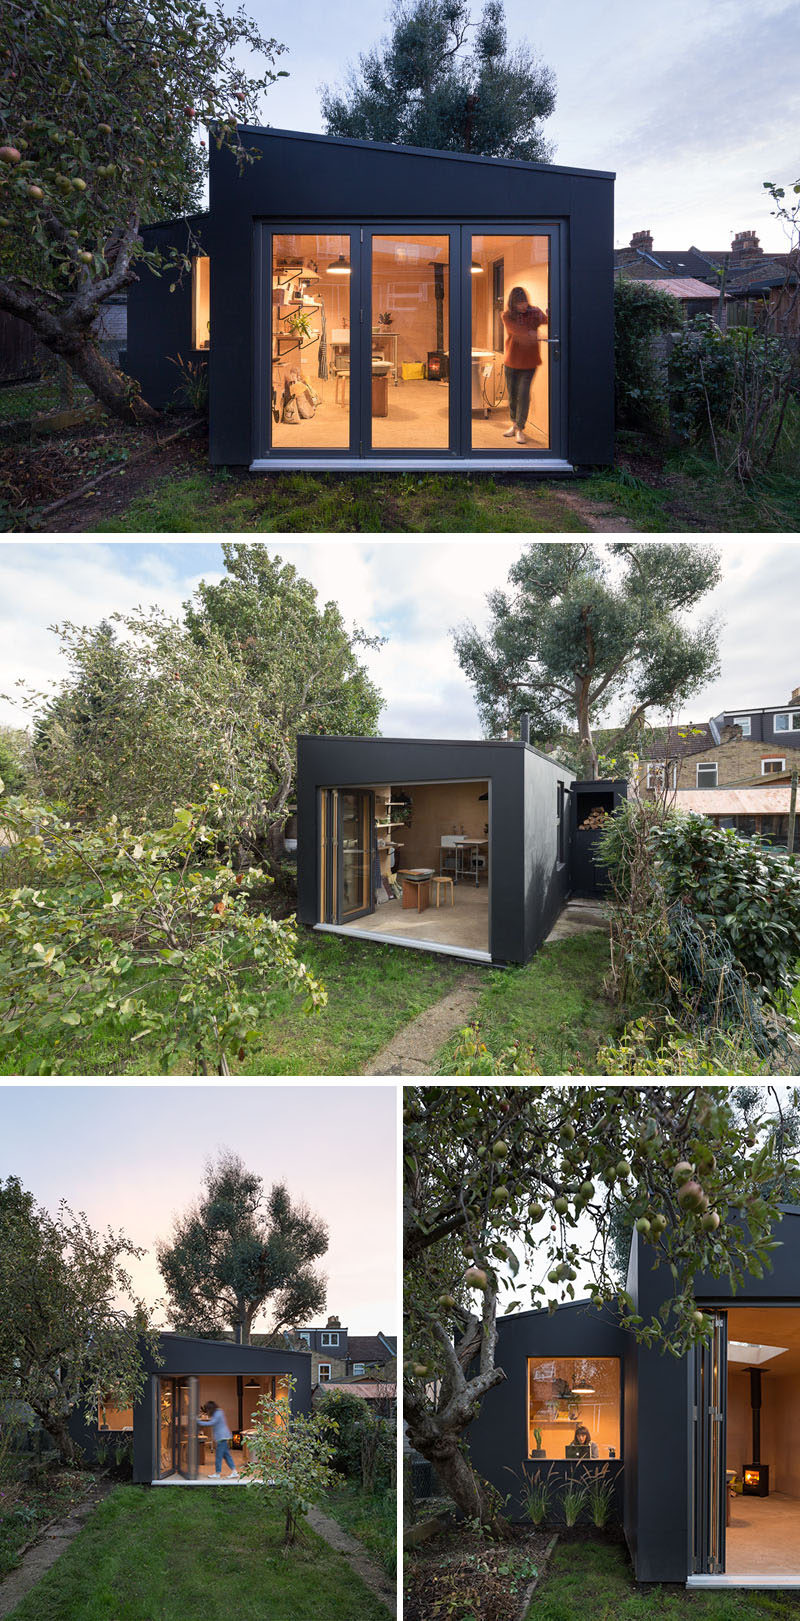  Британская фирма Gray Griffiths Architects спроектировала гончарный сарай на заднем дворе для керамиста в Восточном Лондоне. # Керамика # BackyardStudio 